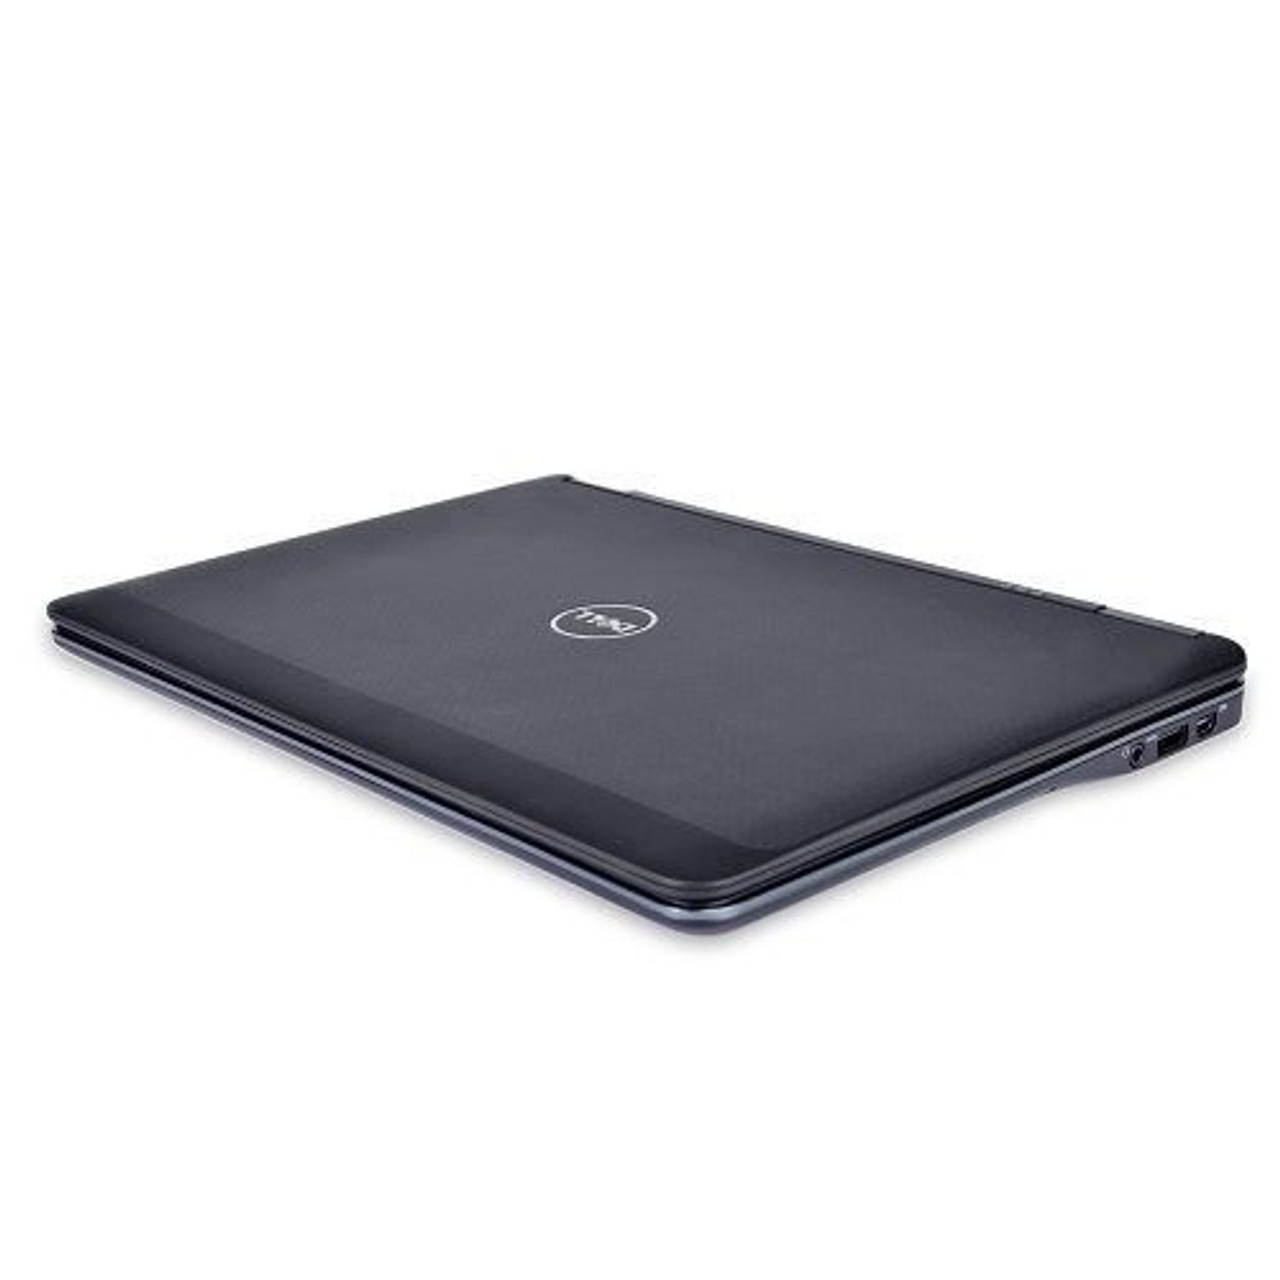 Dell Latitude E7240 12.5" Laptop Intel Core i5 (4200U) 1.6GHz 4GB DDR3 320GB HDD